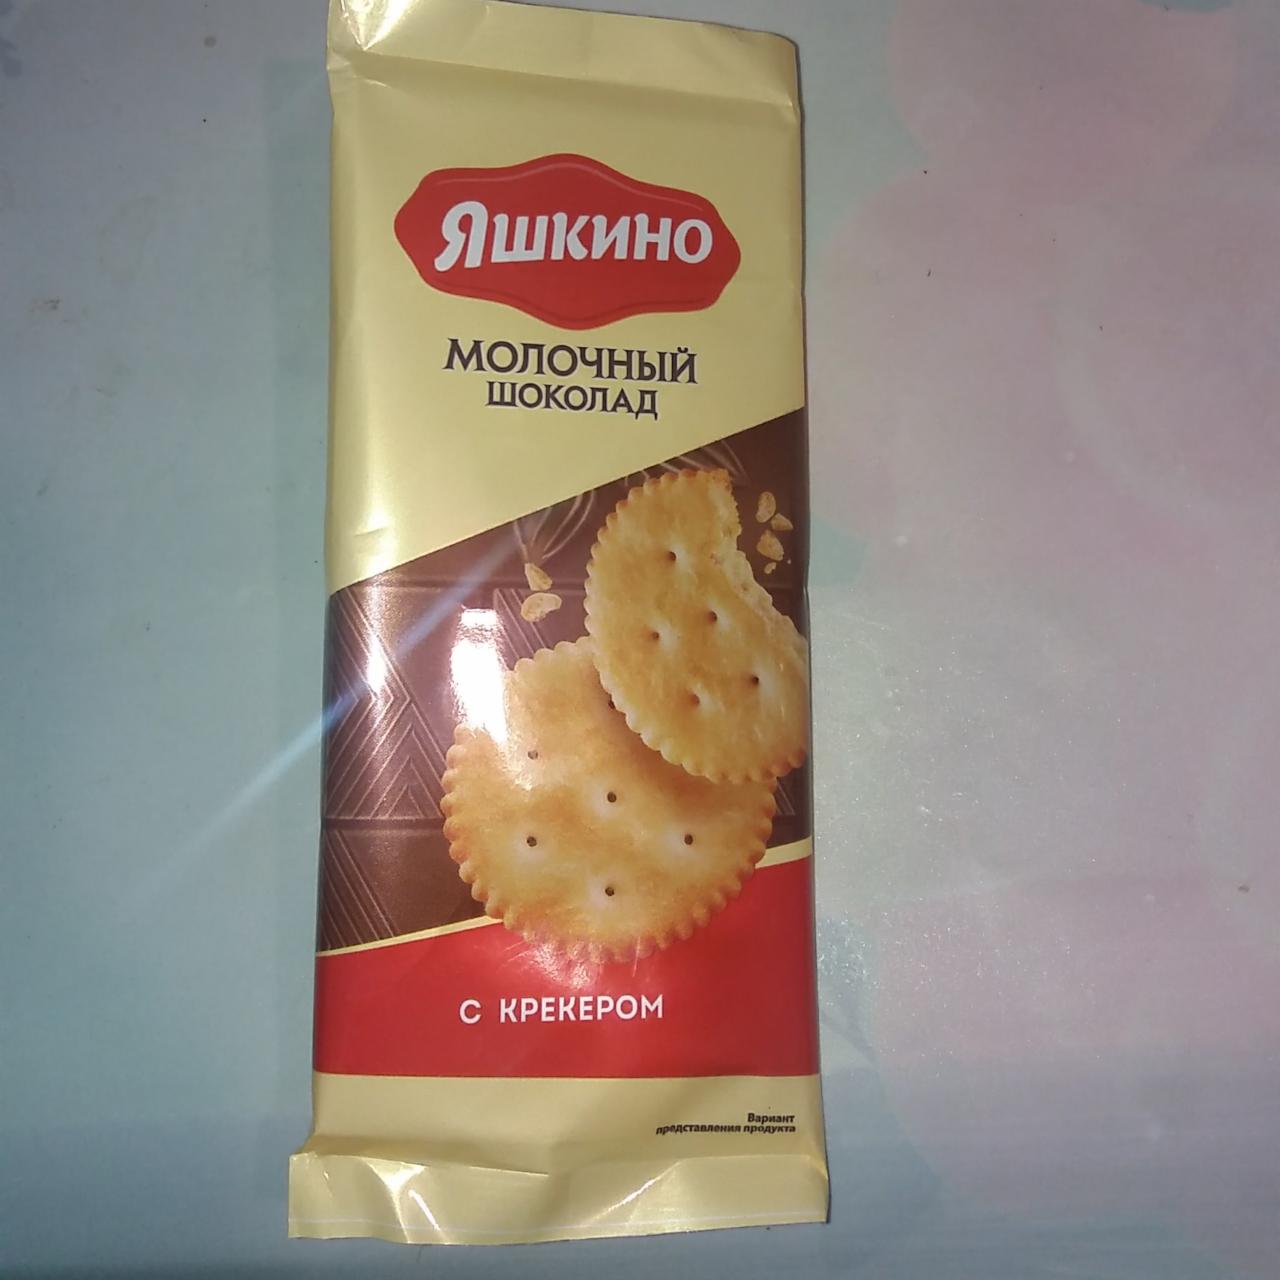 Фото - молочный шоколад с крекером рыбки Яшкино